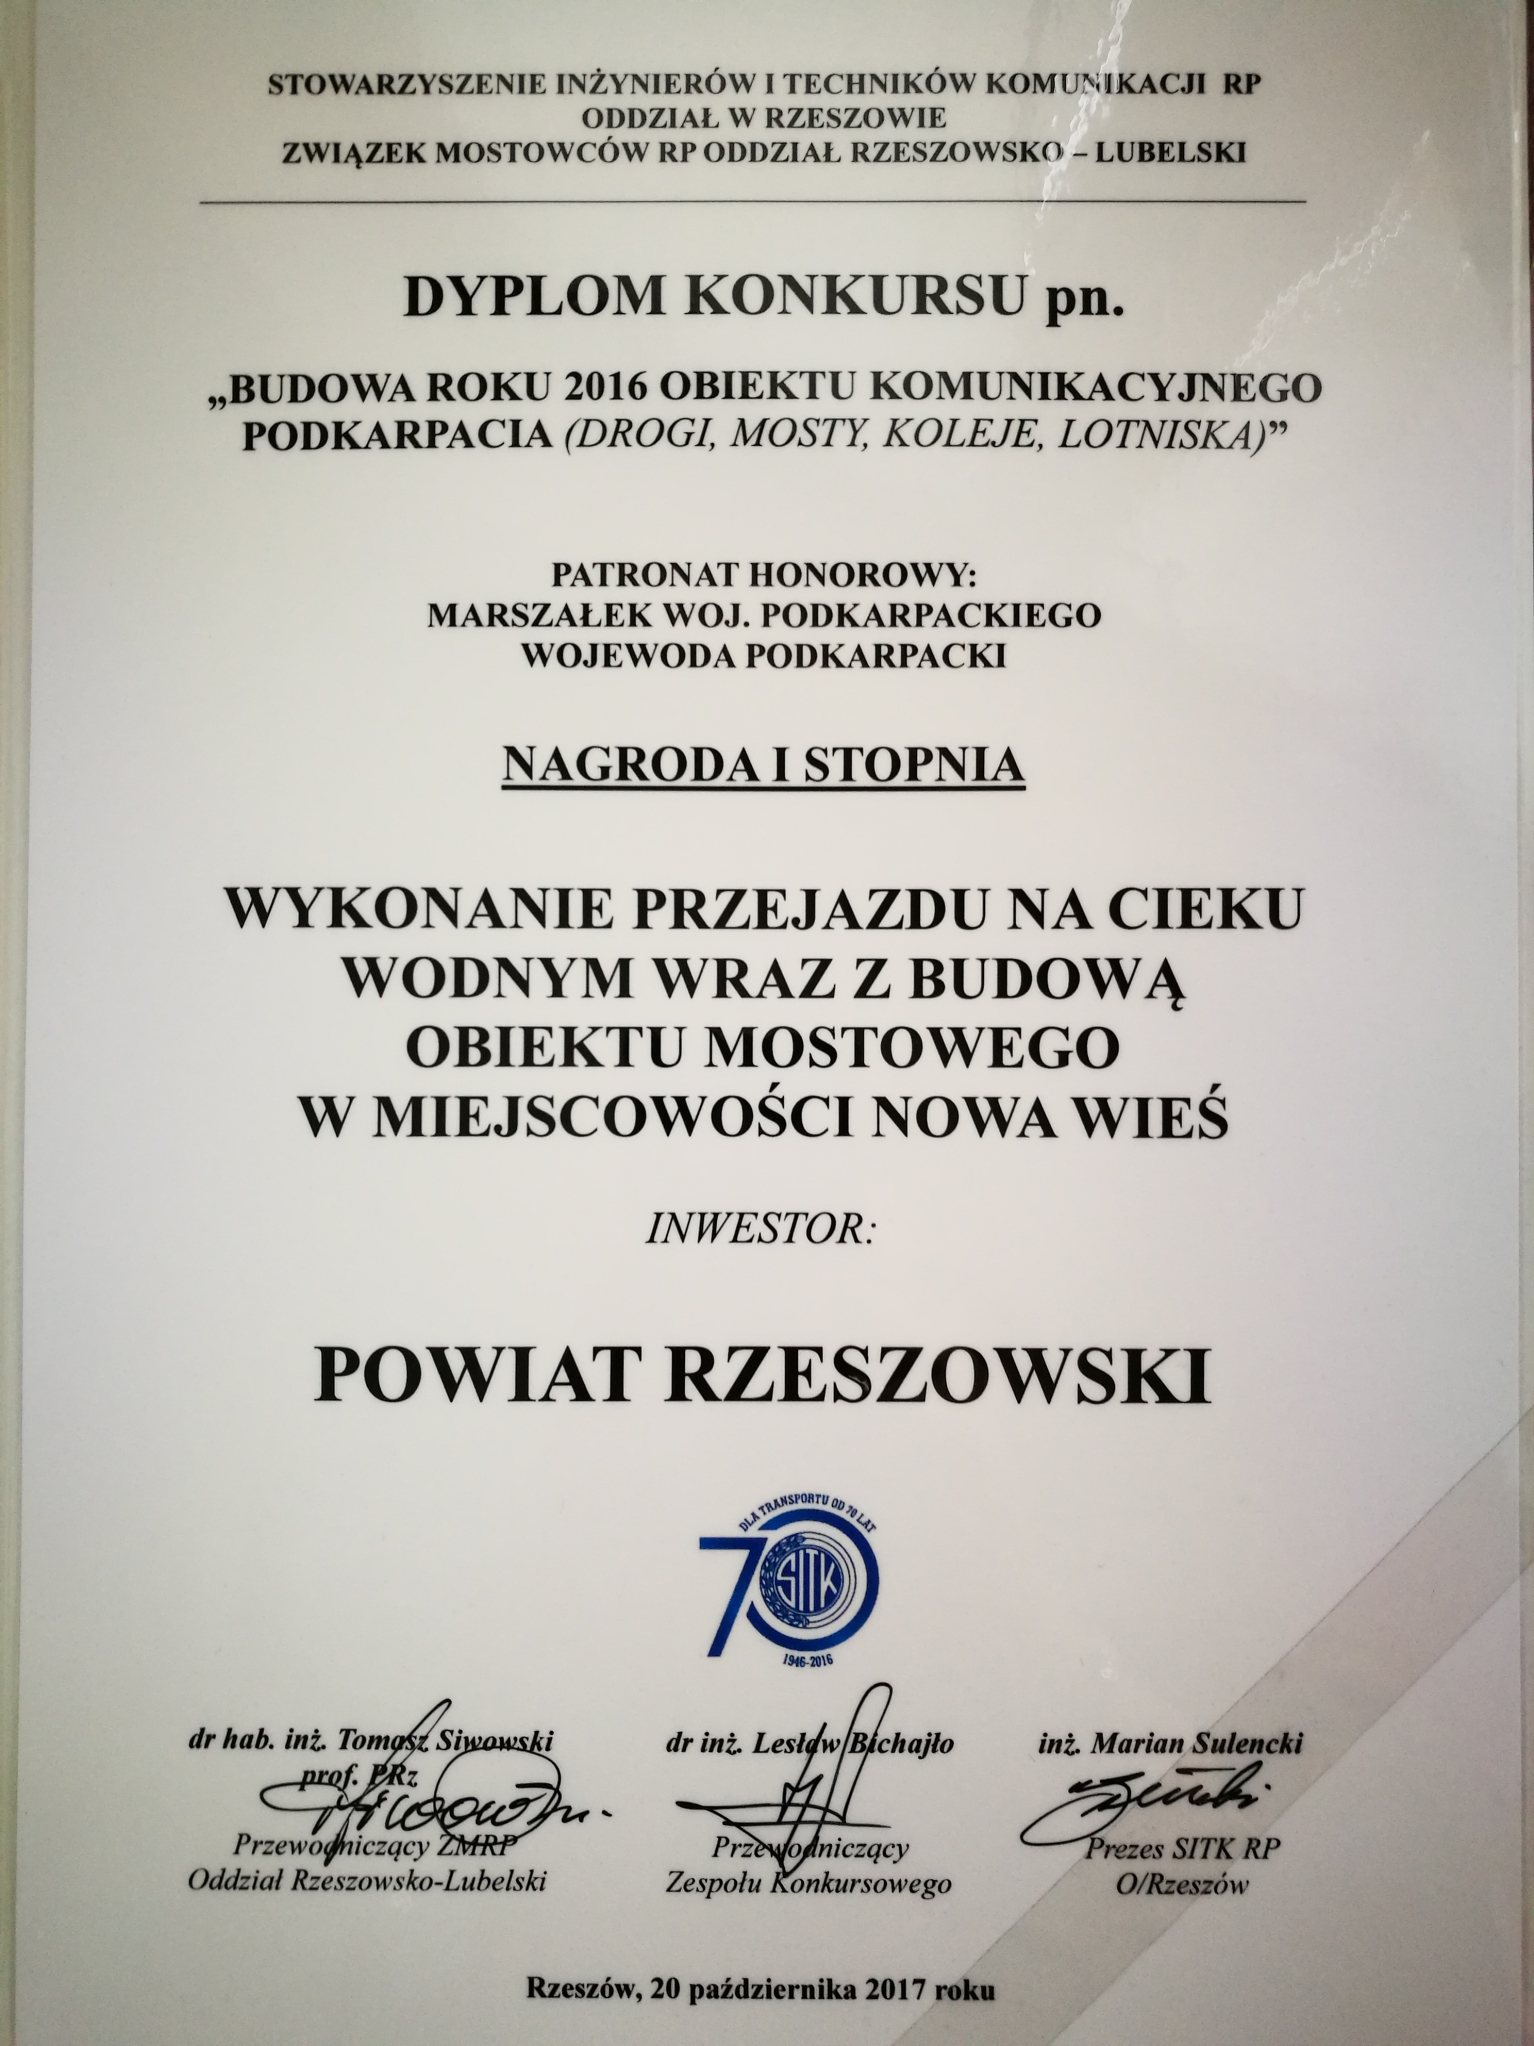 https://powiat.rzeszowski.pl/blog/2020/11/25/wyroznienia-i-wspolpraca-z-organizacjami/img-20171109-121656-jpg-2/